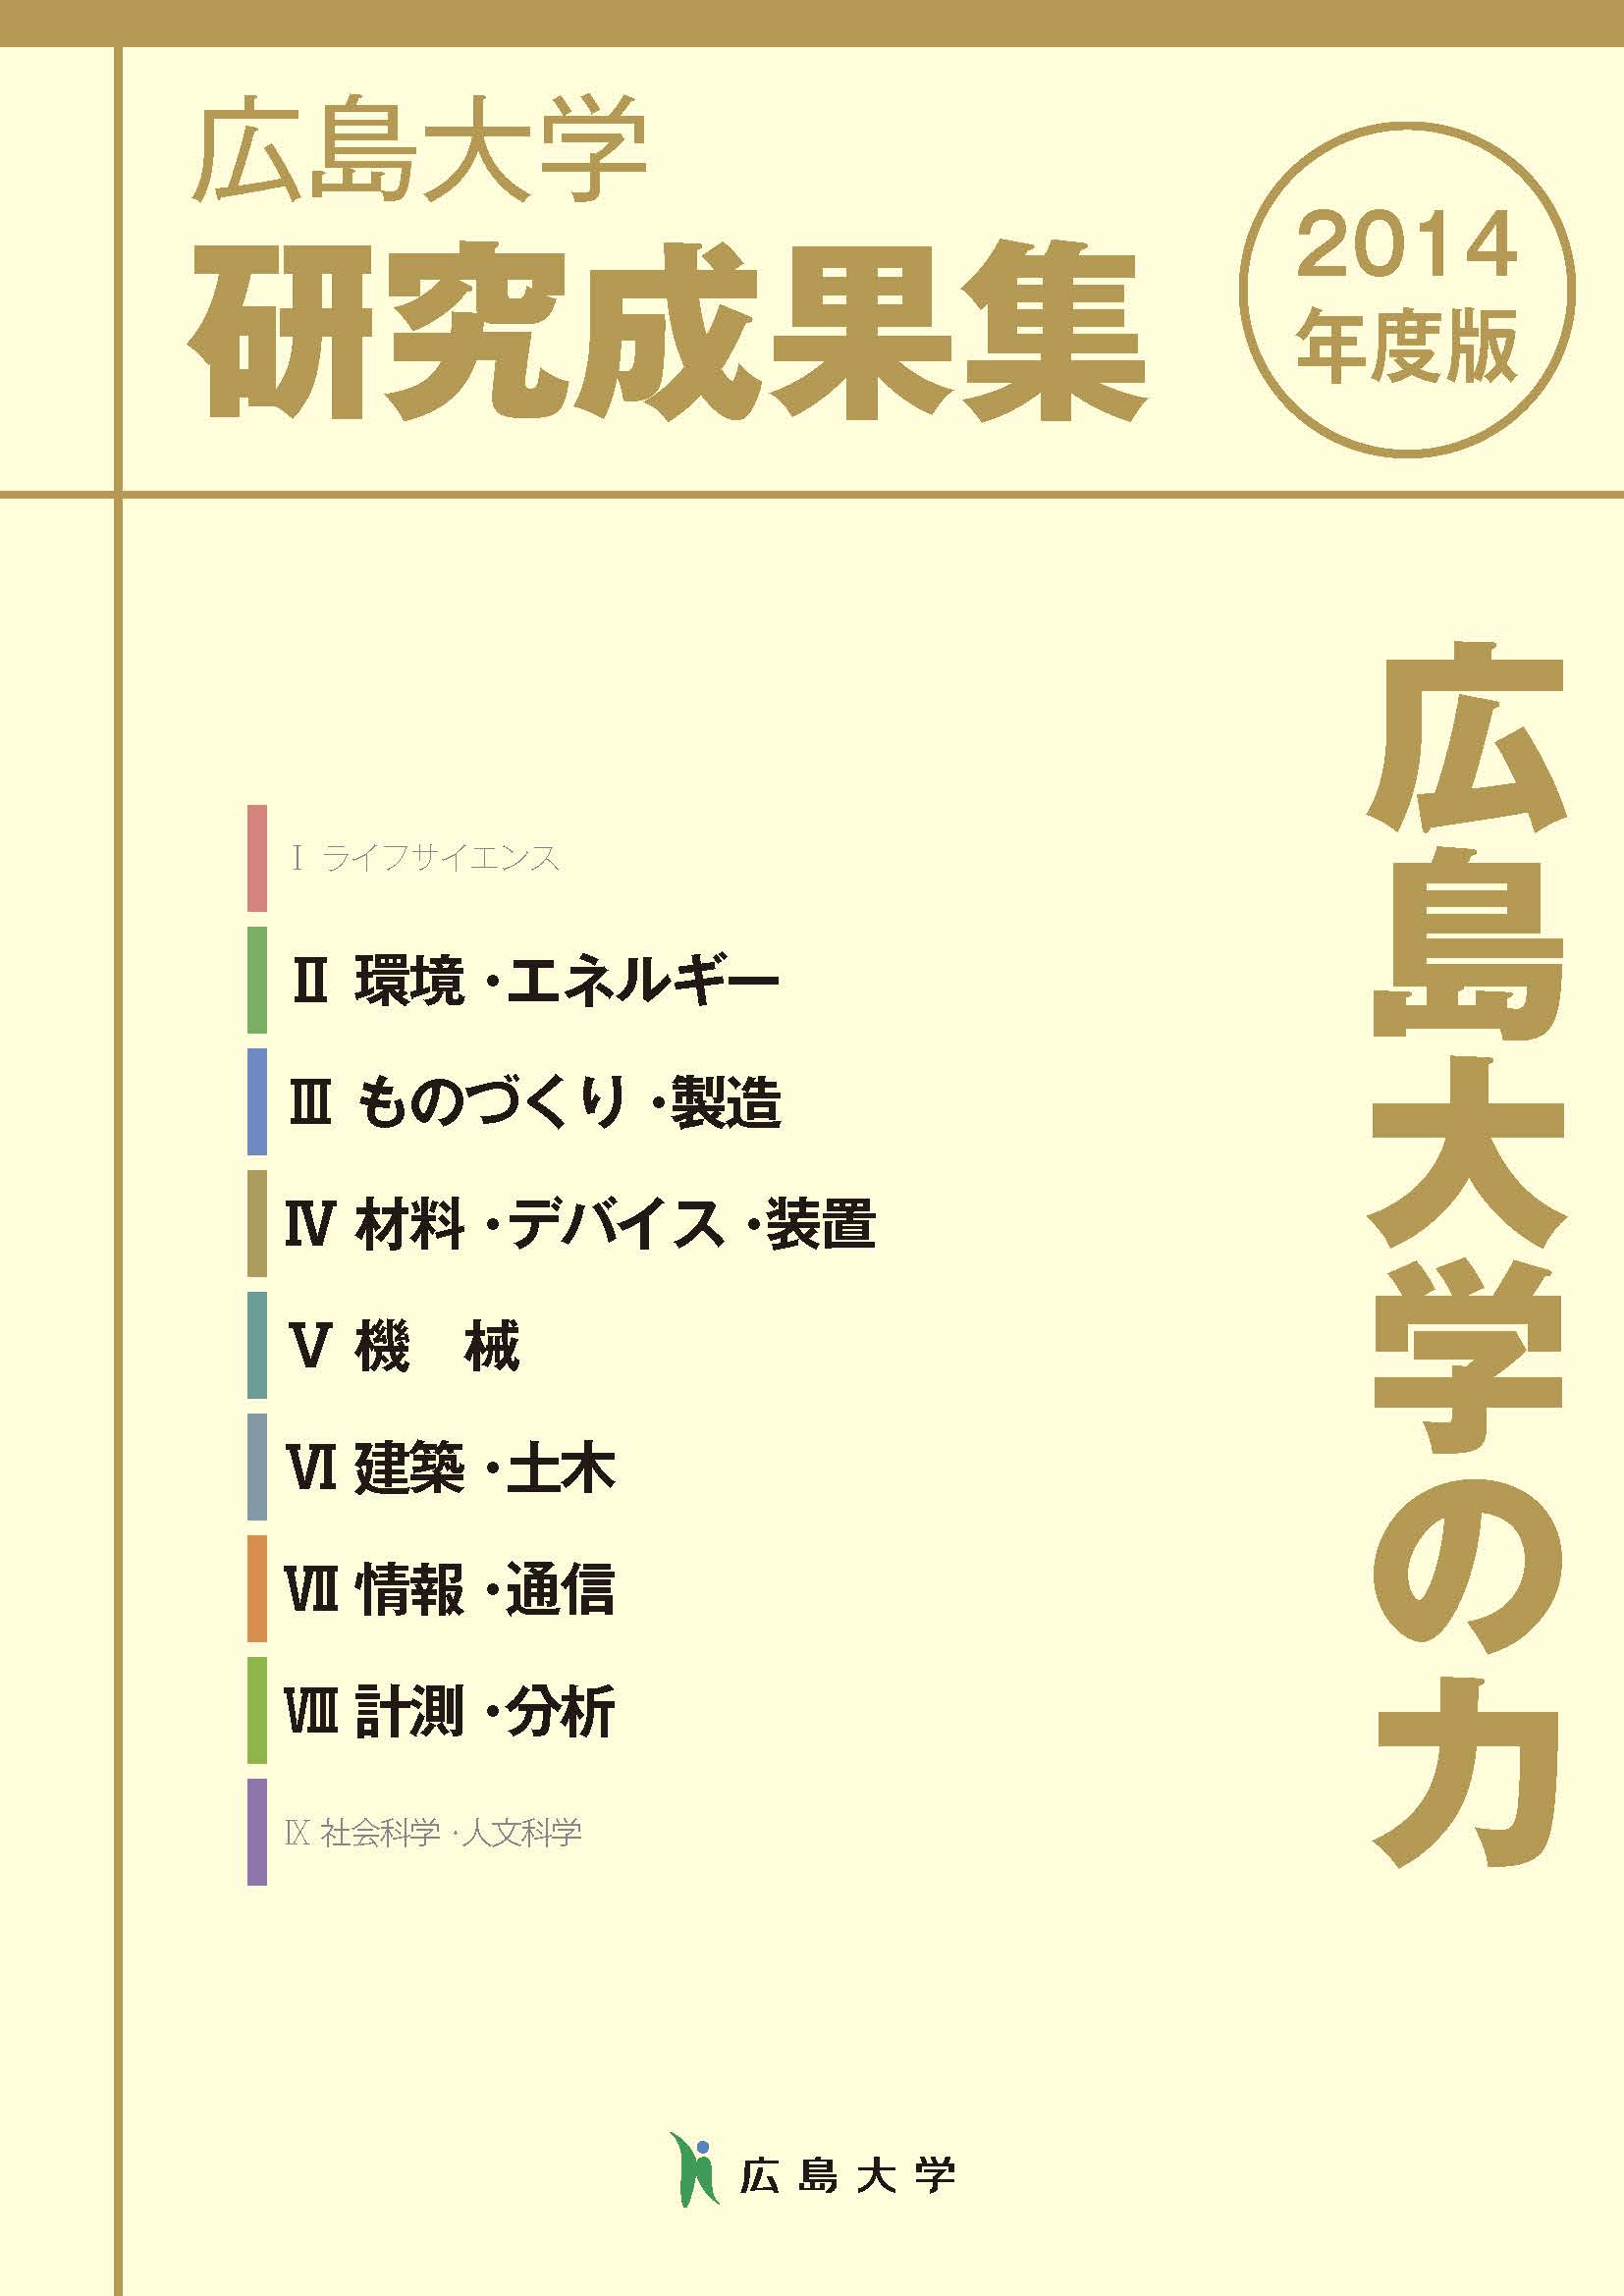 広島大学 研究成果集2014年度版 II～VIII